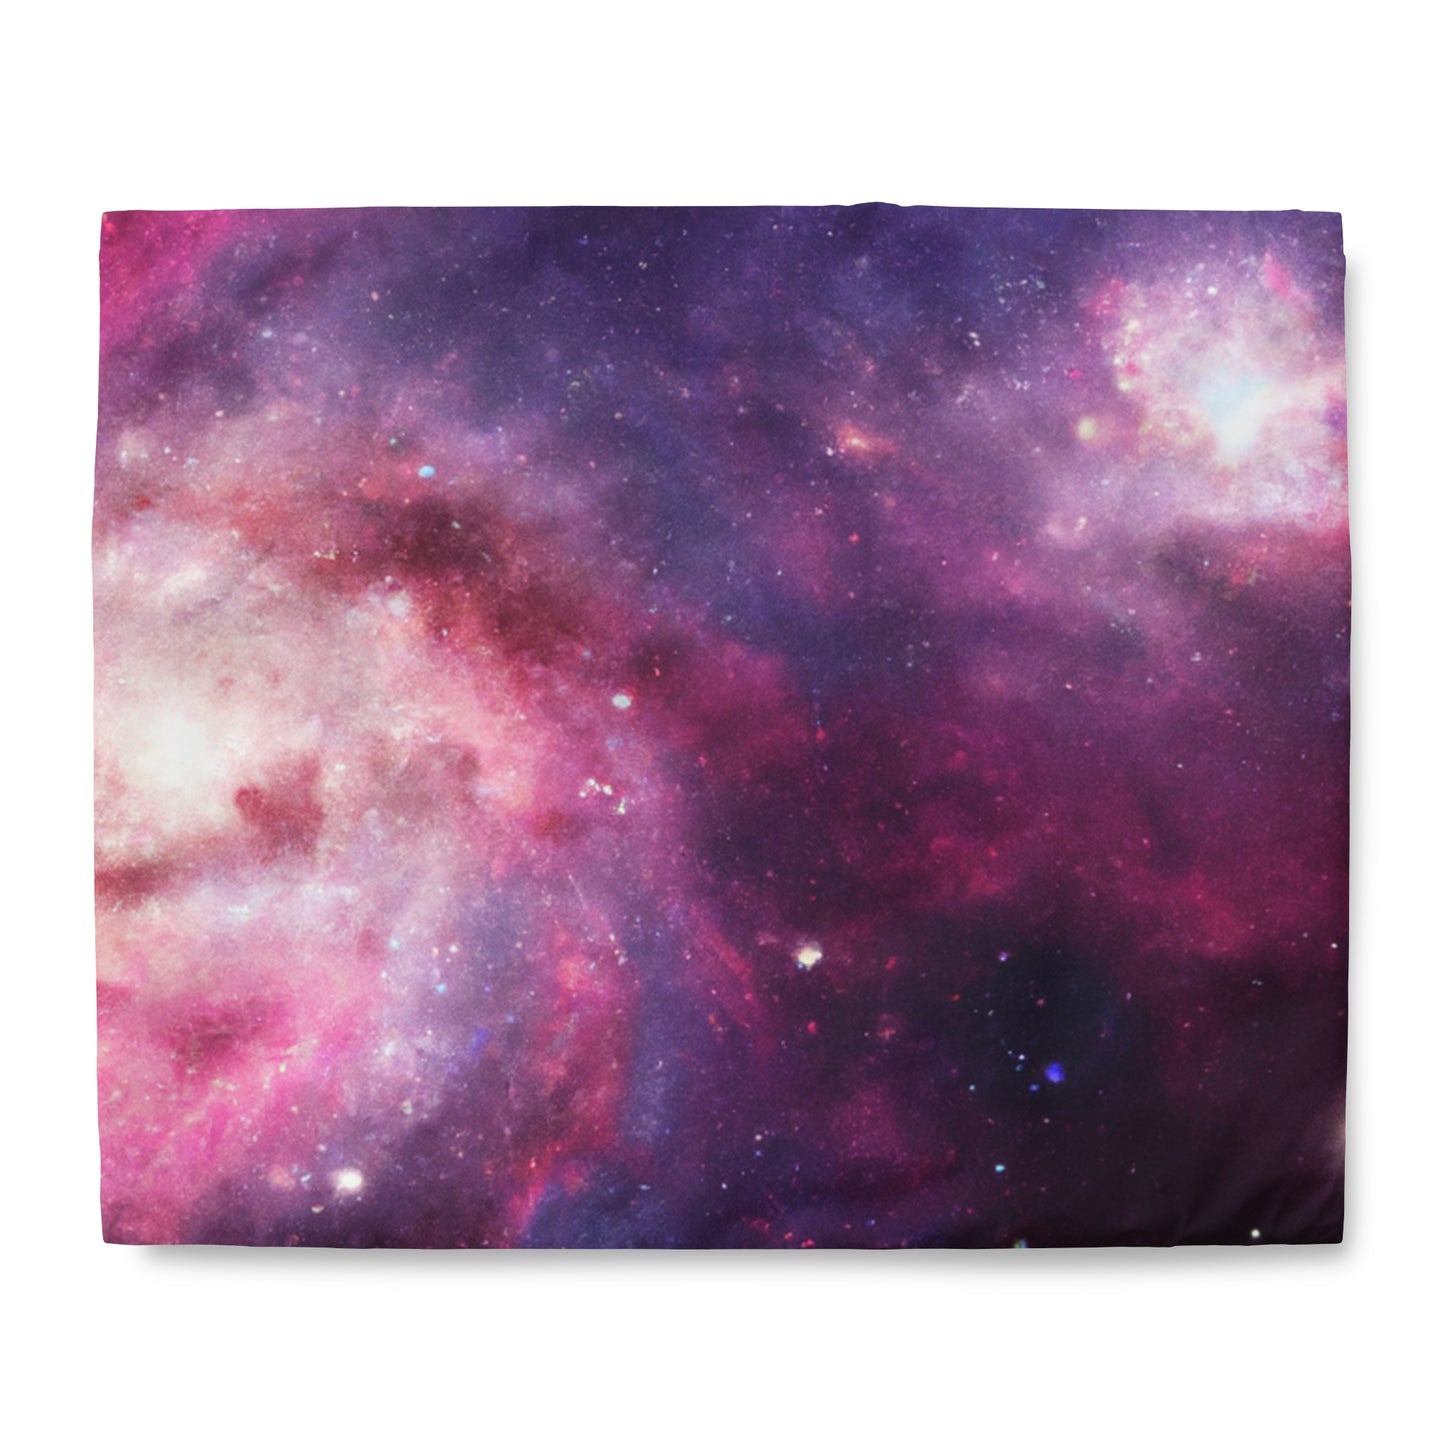 The Dream of Karla - Astronomy Duvet Bed Cover